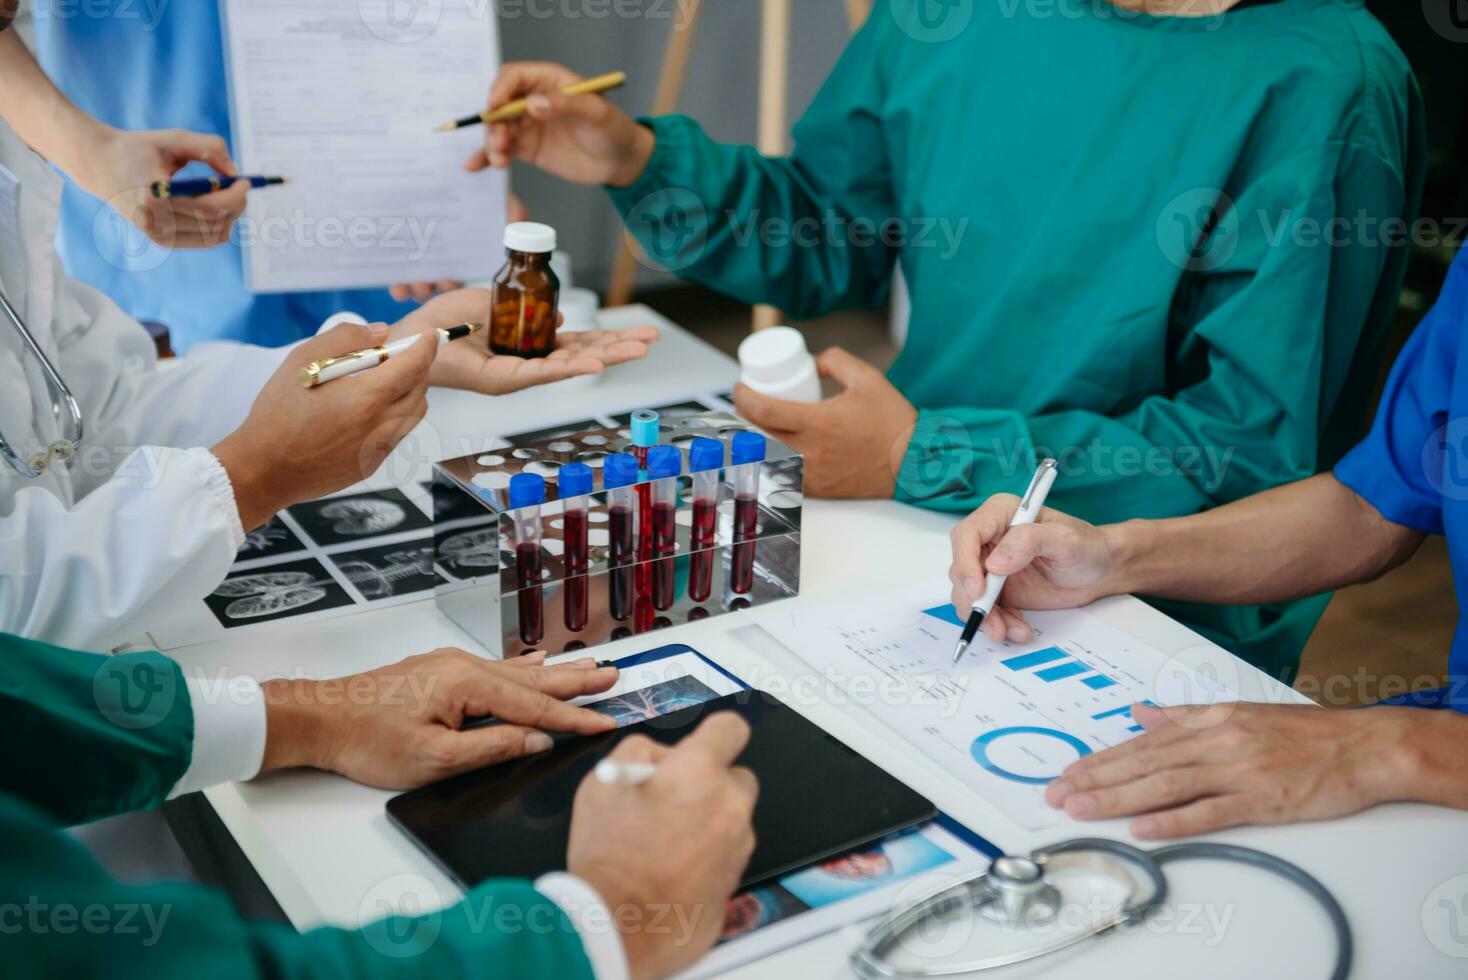 medicinsk team har en möte med doktorer i vit labb rockar och kirurgisk scrubs sittande på en tabell diskuterar en patienter arbetssätt uppkopplad använder sig av datorer i de medicinsk industri foto